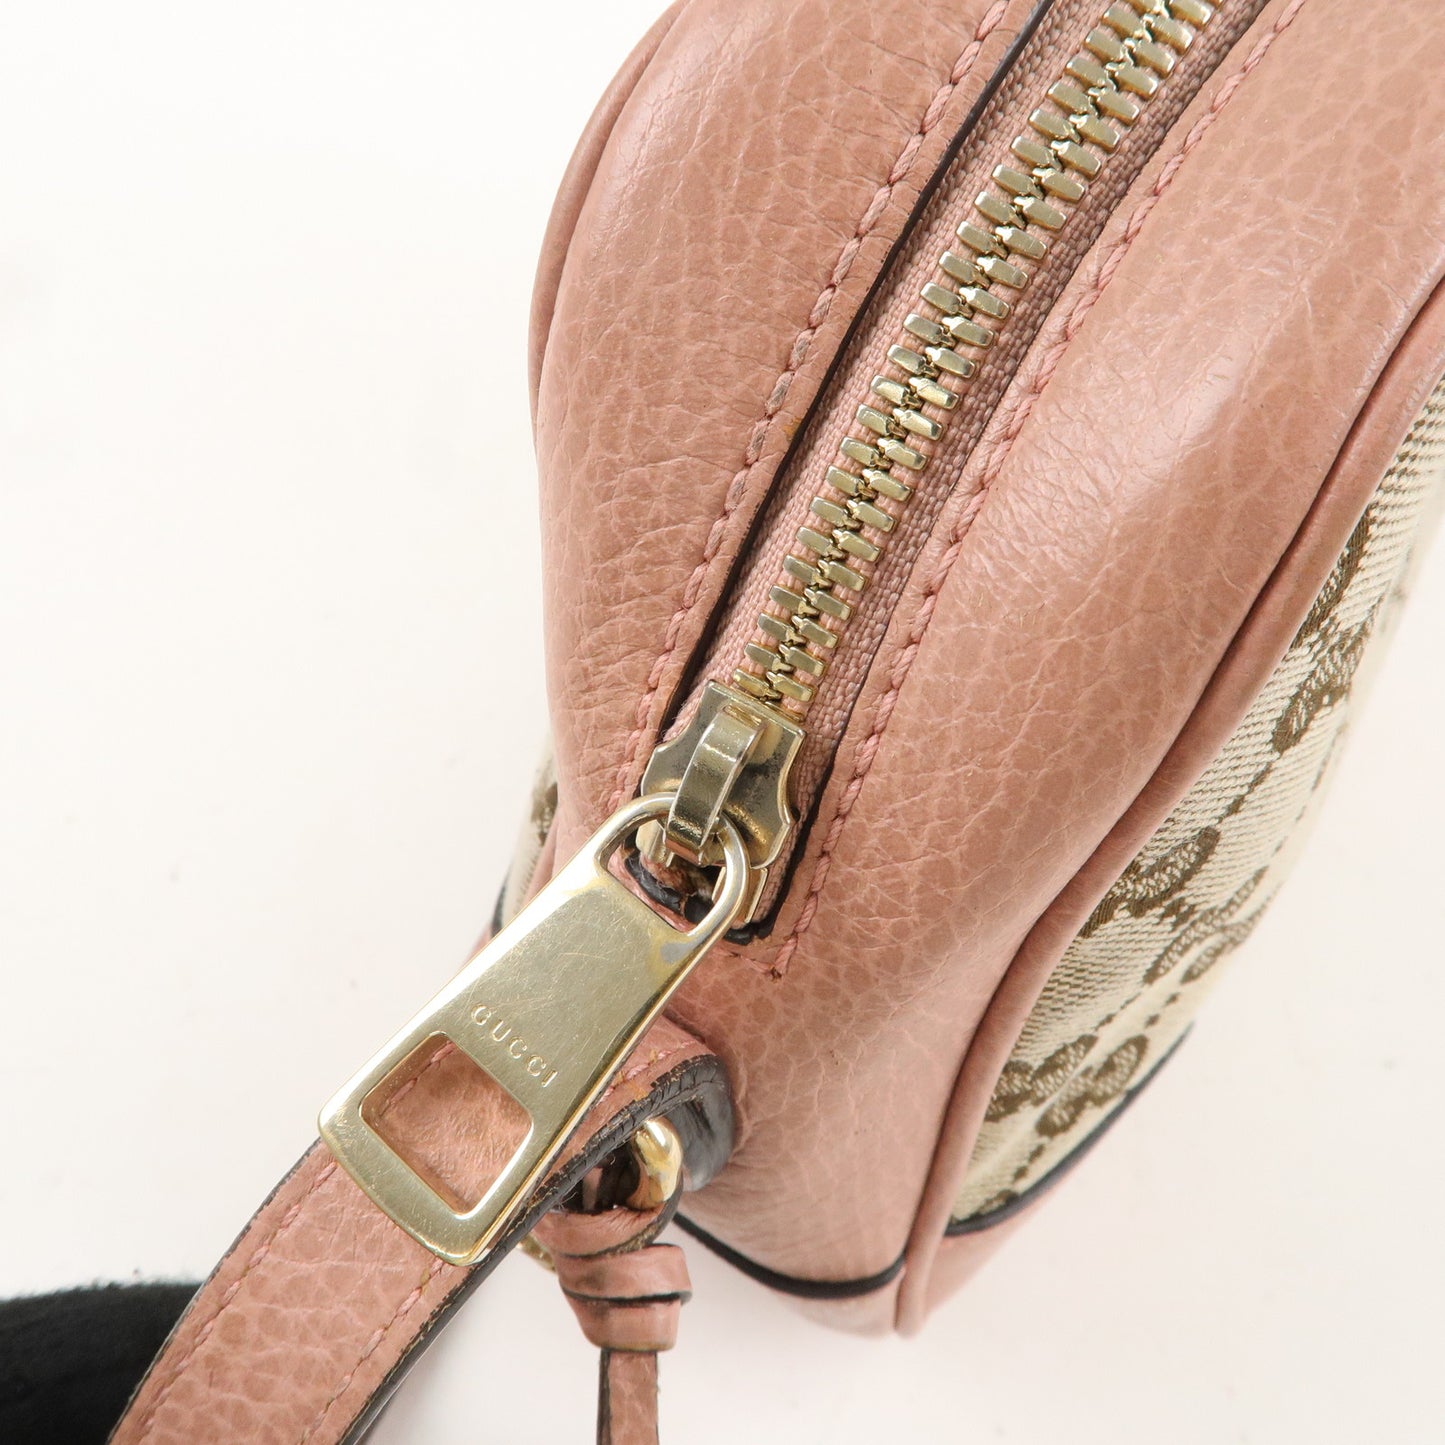 GUCCI GG Canvas Leather Shoulder Bag Beige Pink 449413